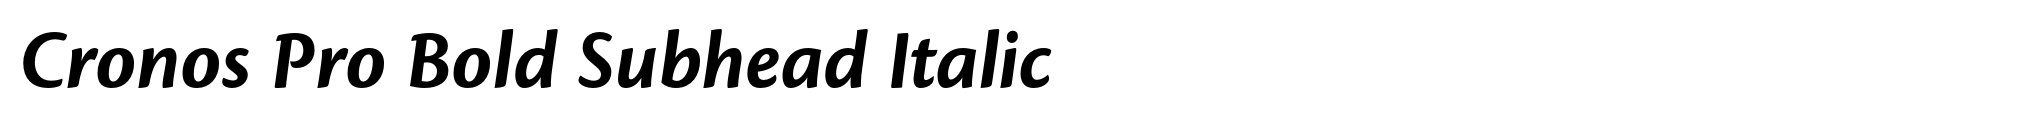 Cronos Pro Bold Subhead Italic image